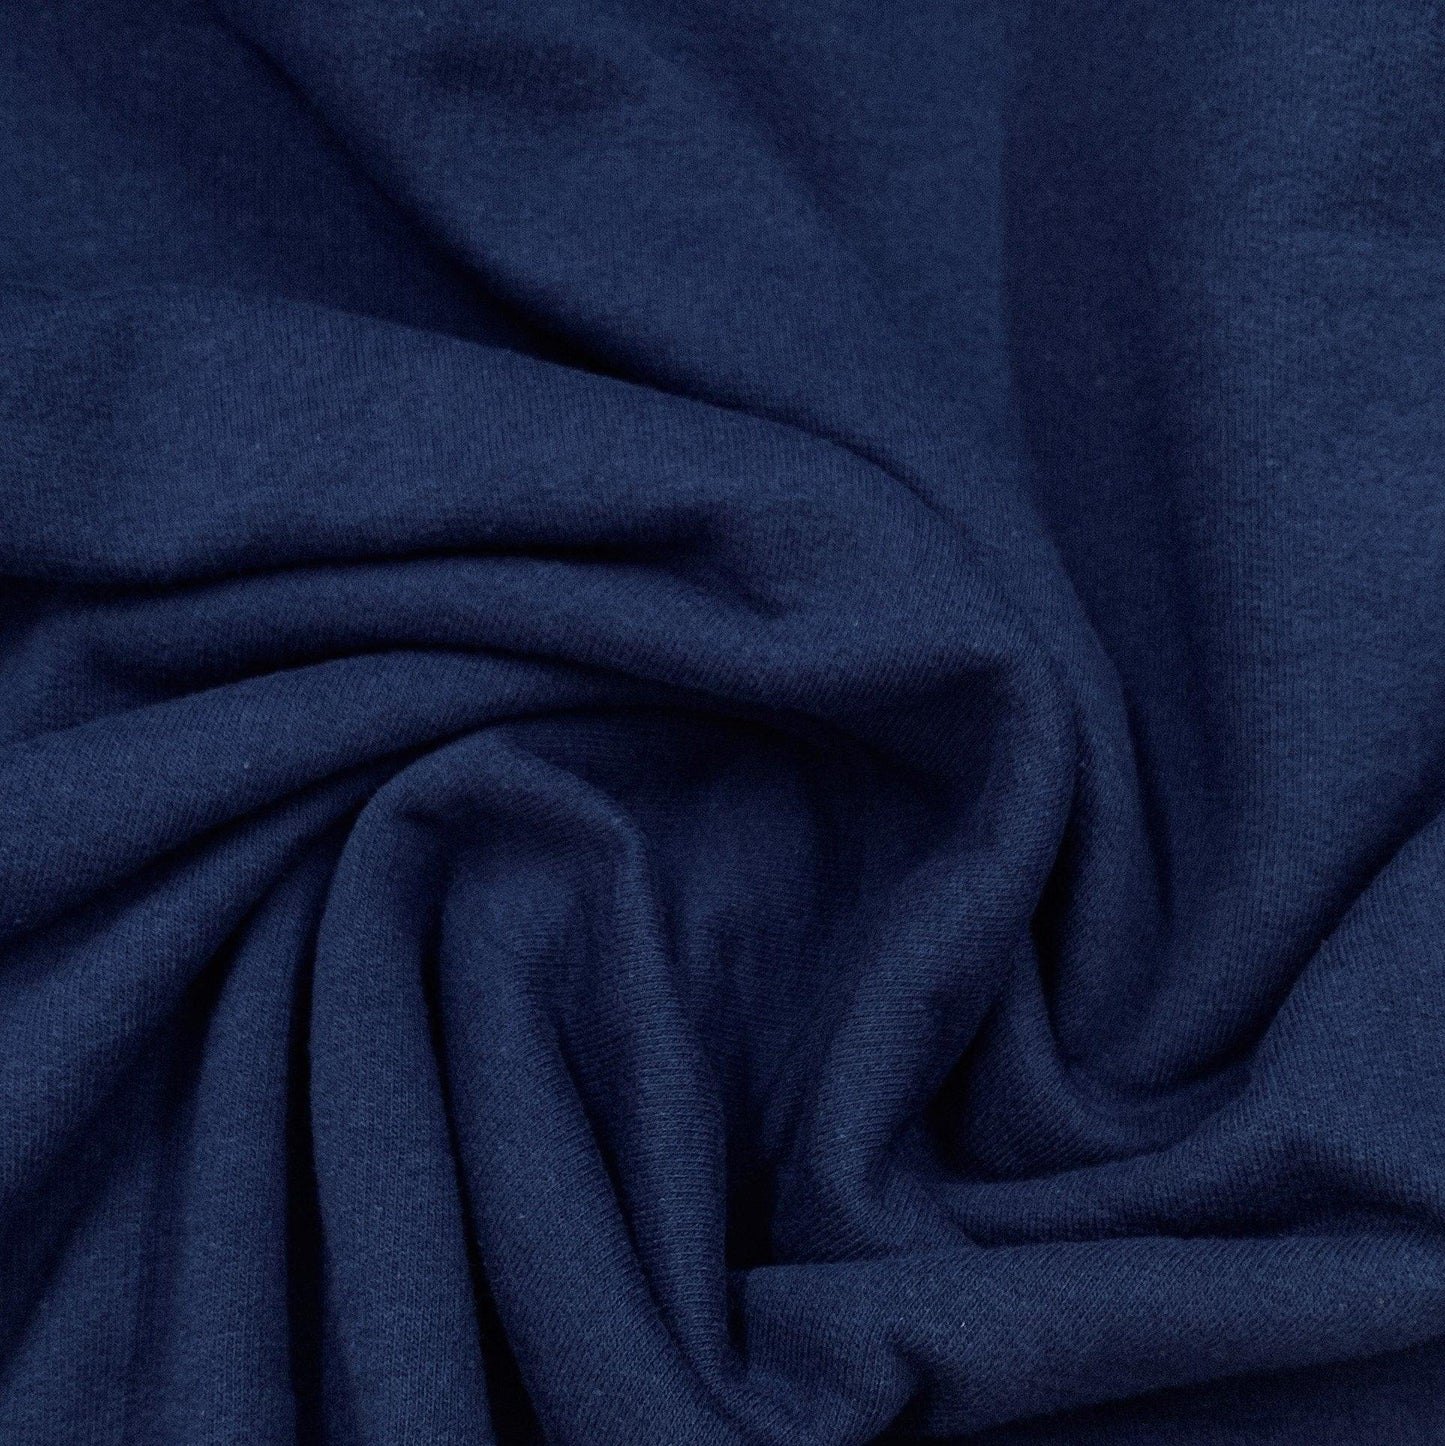 Fleet Blue Organic Cotton Fleece Fabric - 240 GSM - Grown in the USA ...